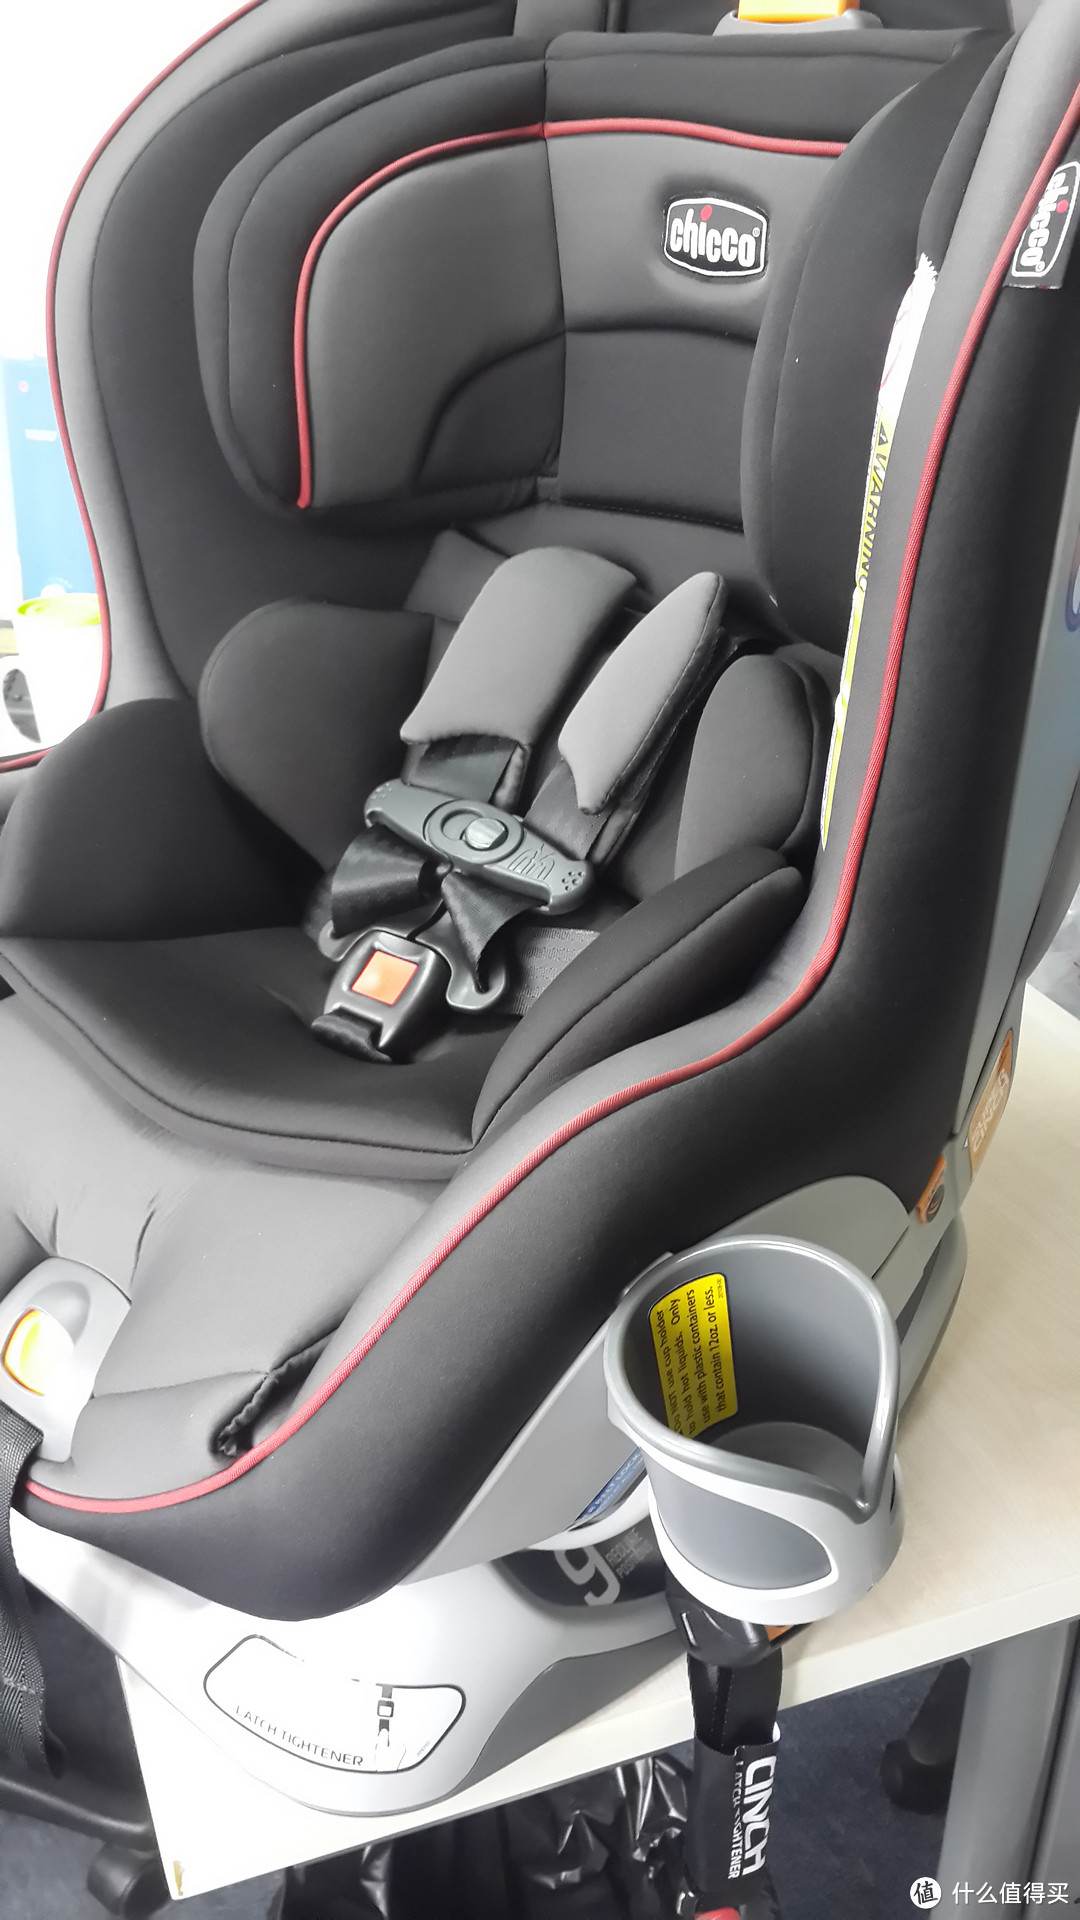 第一次海淘，美亚购买 chicco 智高 NextFit Convertible 安全座椅